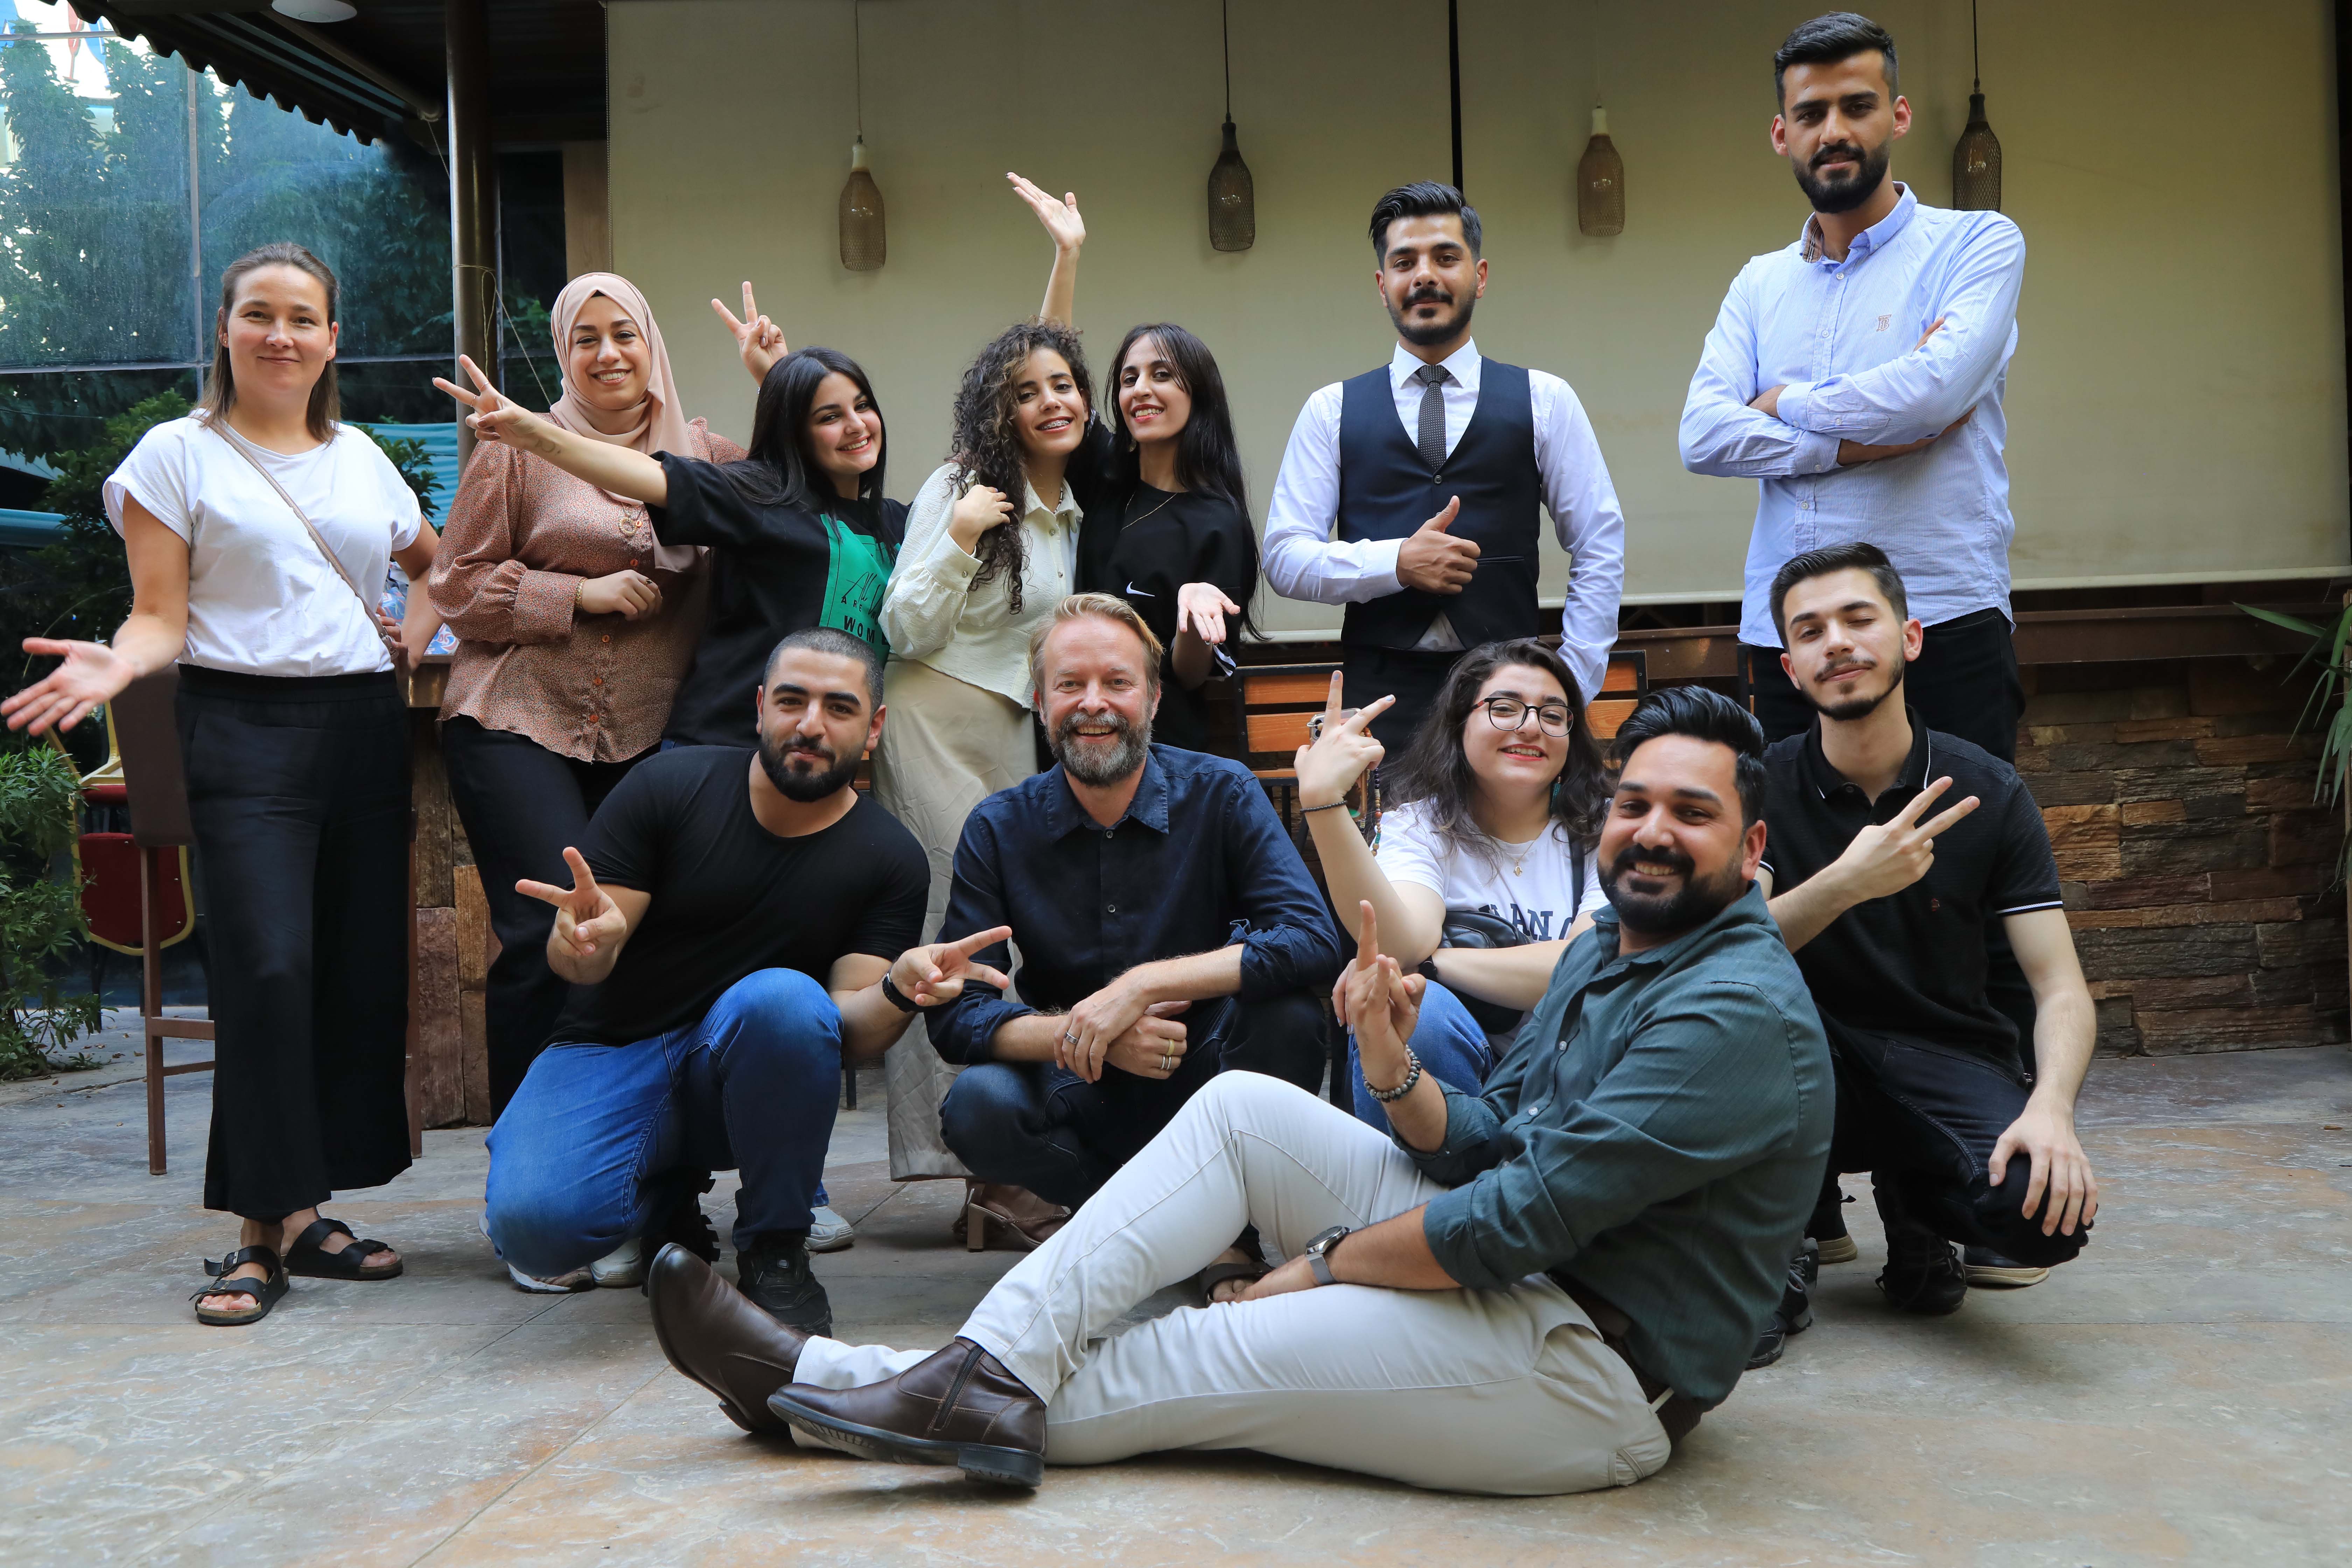 Erbilissä järjestettyyn nuorille suunnattuun työpajaan valittiin 10 miestä ja naista yli 1 000 eri puolilta Irakia tulleen hakemuksen joukosta. Kuva: Tech4Peace